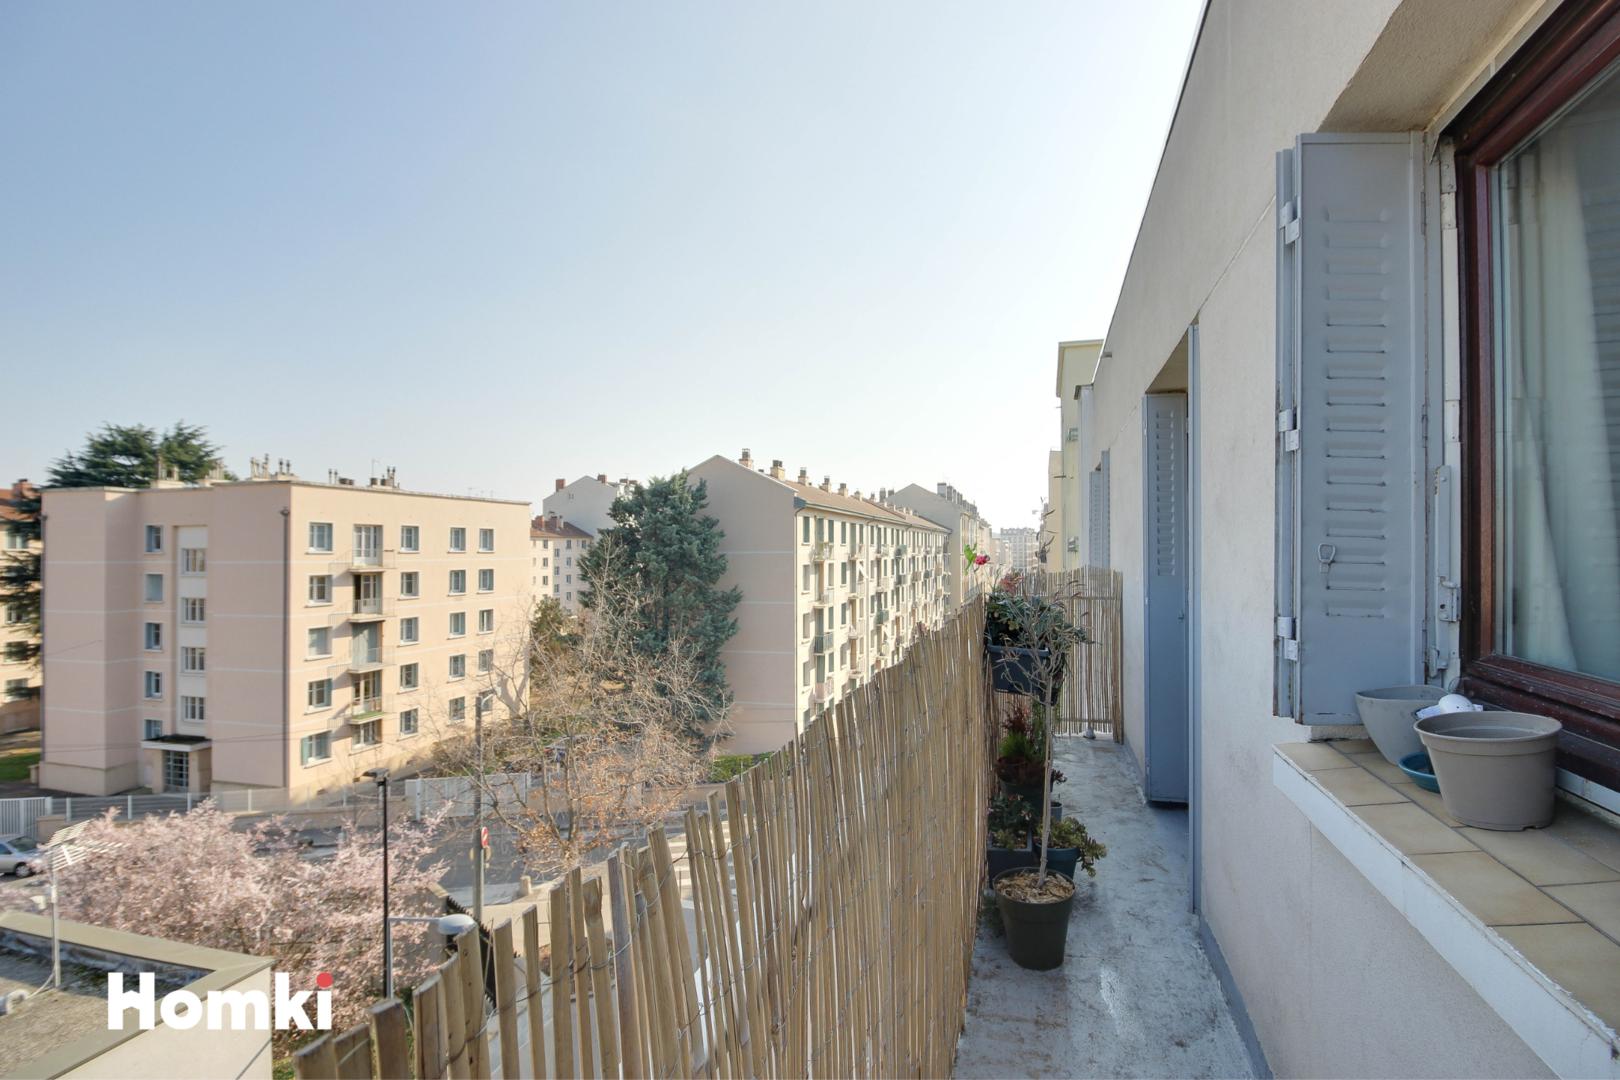 Homki - Vente Appartement  de 95.0 m² à Villeurbanne 69100